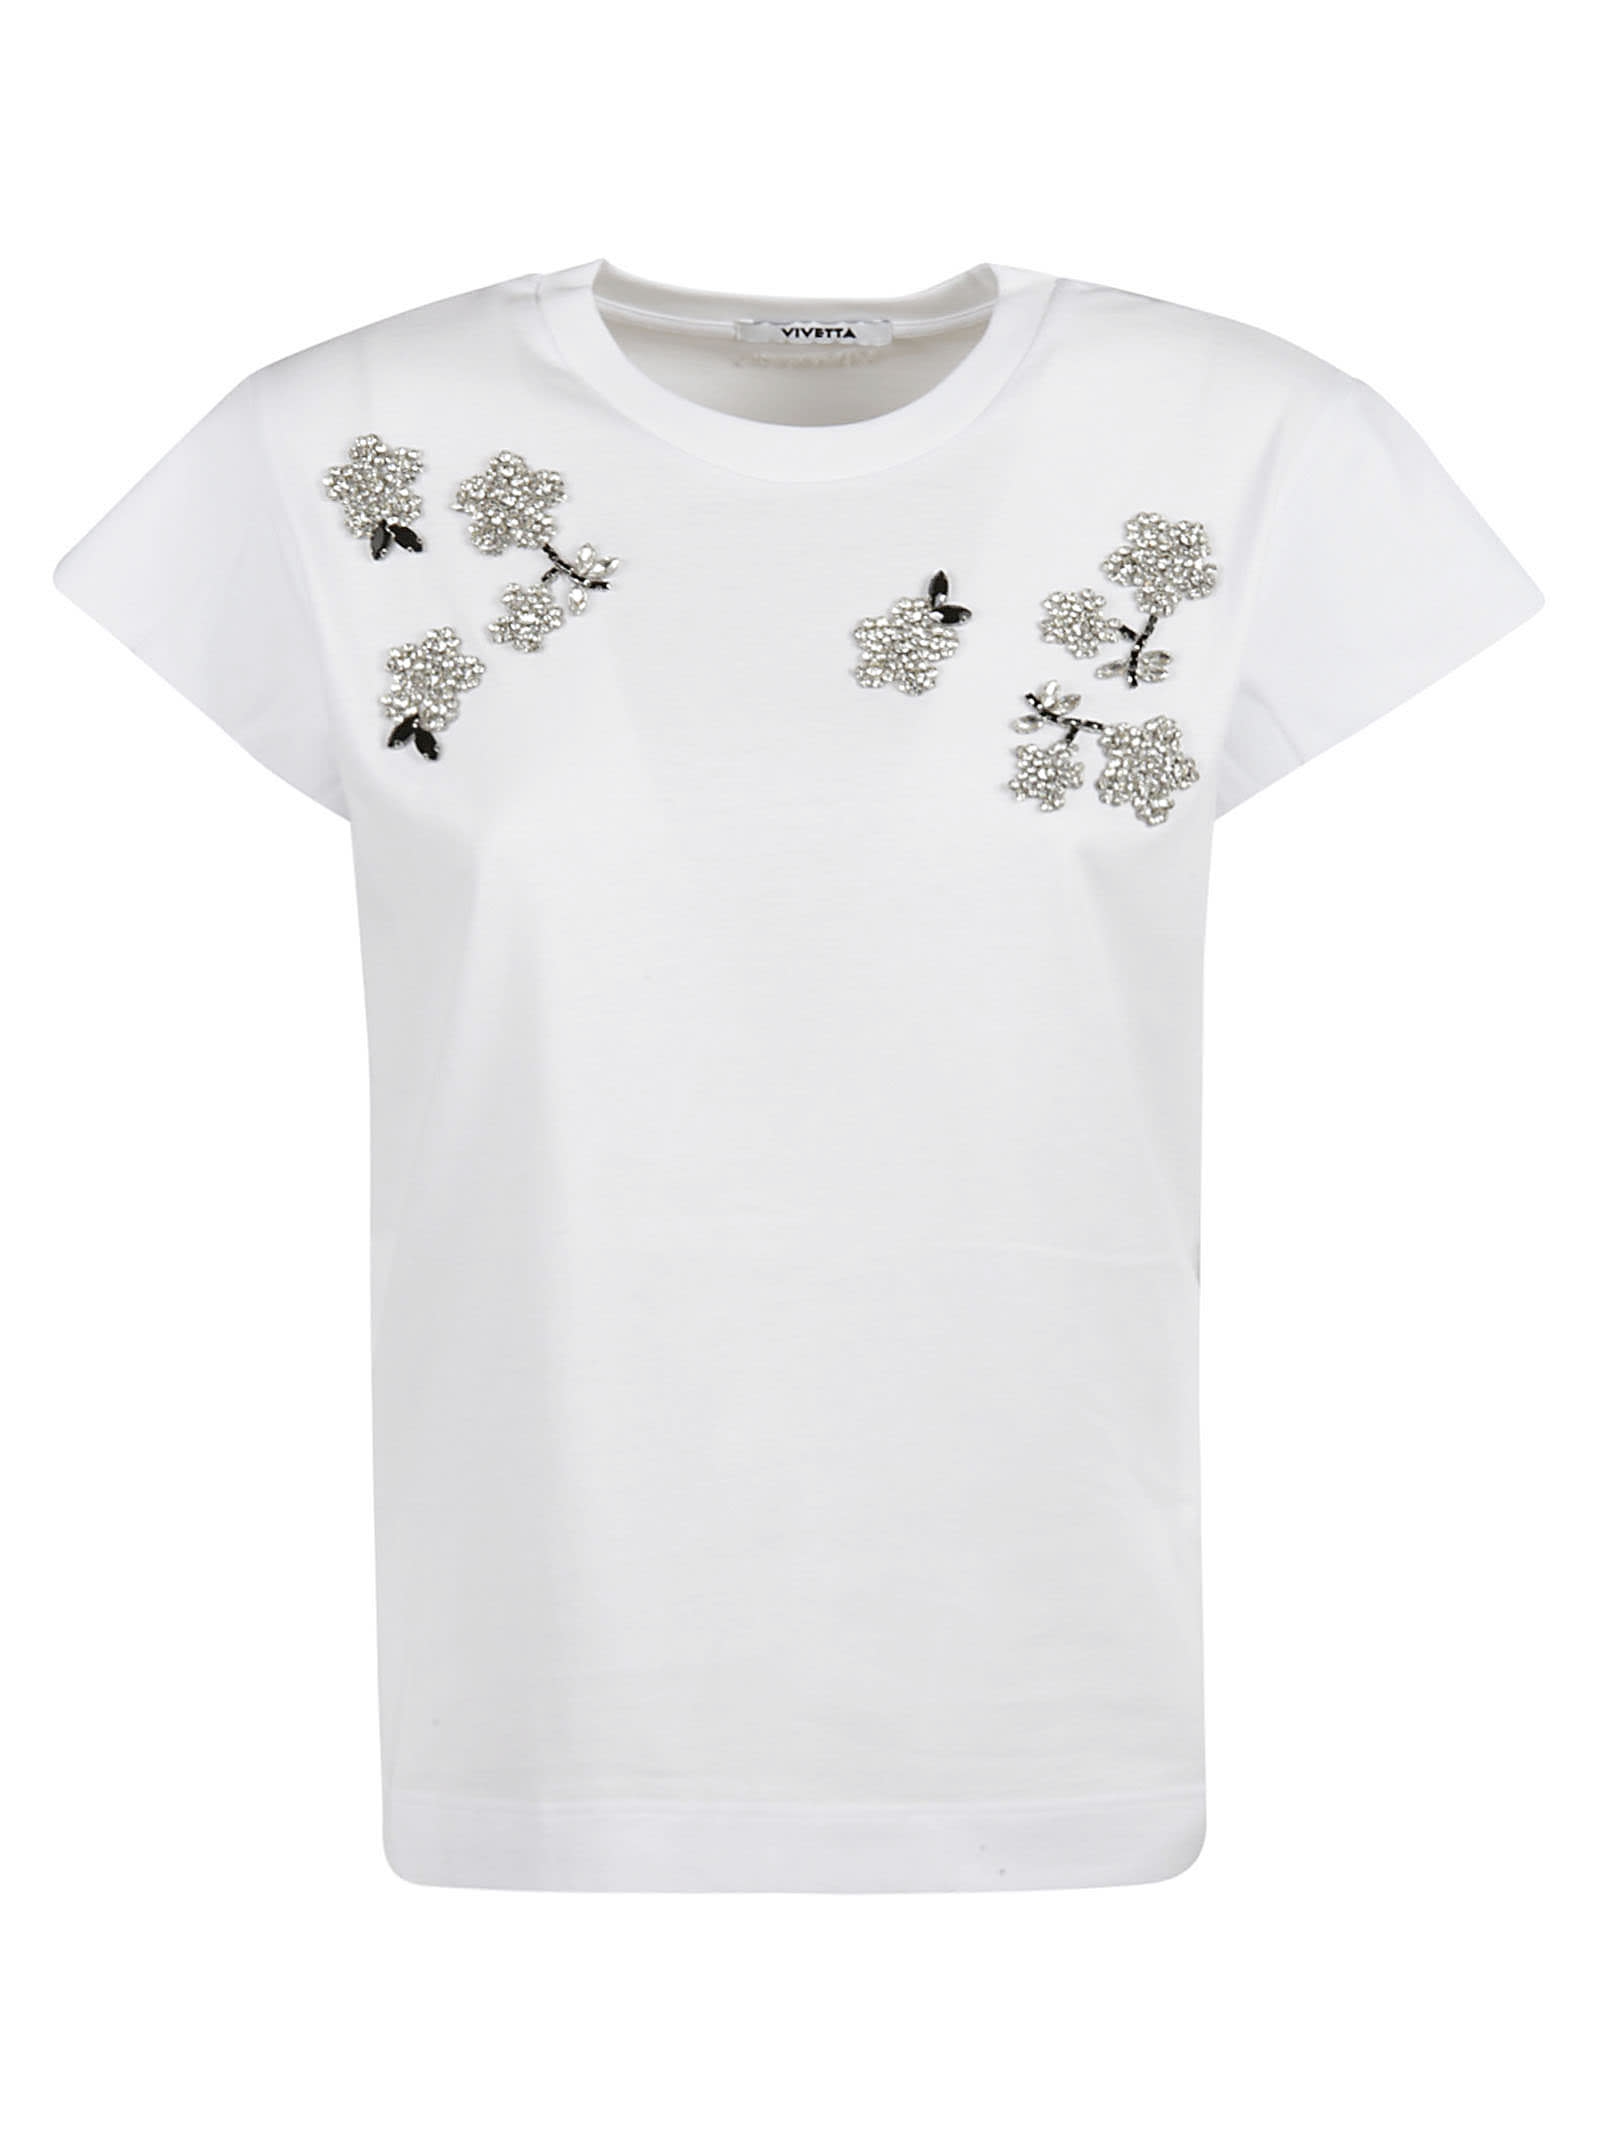 Vivetta Floral Embellished T-shirt